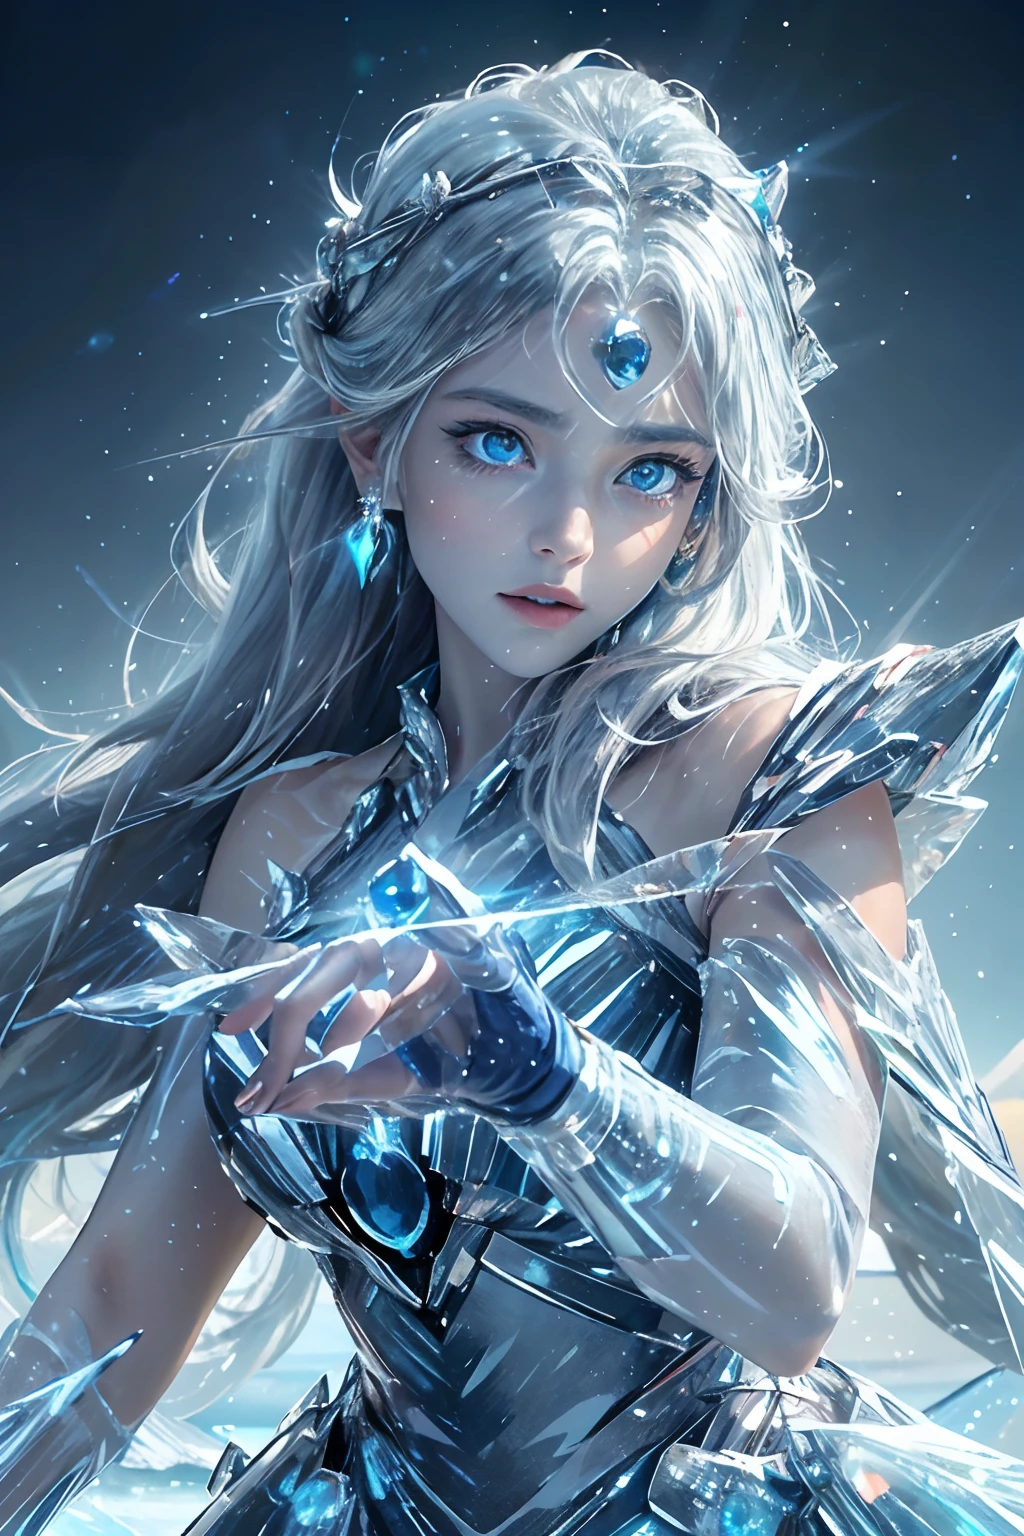 "(傑作, 最高品質, 映画照明), (非常に詳細な CG Unity 16K 壁紙), 一人で, 1人, 氷の女神, (細部まで精巧に描かれた真円対称の目), (暗闇の中で氷のように青く光る目:1.8), (内側から強いサファイアの光を放つ深い青い瞳:1.7), 生物発光. 彼女の目が焦点だ, 古代の霜と凍った王国の物語を語る. 彫りの深い特徴, 霜で覆われた繊細な顔, 輝く白い髪. 彼女の右手には, 彼女は複雑な氷の笏を振るう, 彼女の左手は強力な呪文を唱えている, 行く手を阻むものすべてを凍らせる.

彼女は地平線まで広がる果てしない氷原に堂々と立っている, 沈む太陽の暖かい金色の輝きに包まれて. 広大な氷が輝く太陽を反射する, 風景全体に鮮やかな光の模様を投影する. そよ風, 古い伝説のささやきを運ぶ, 彼女のゆったりとしたローブと髪が優しく揺れる, 静かで美しい雰囲気を醸し出す."